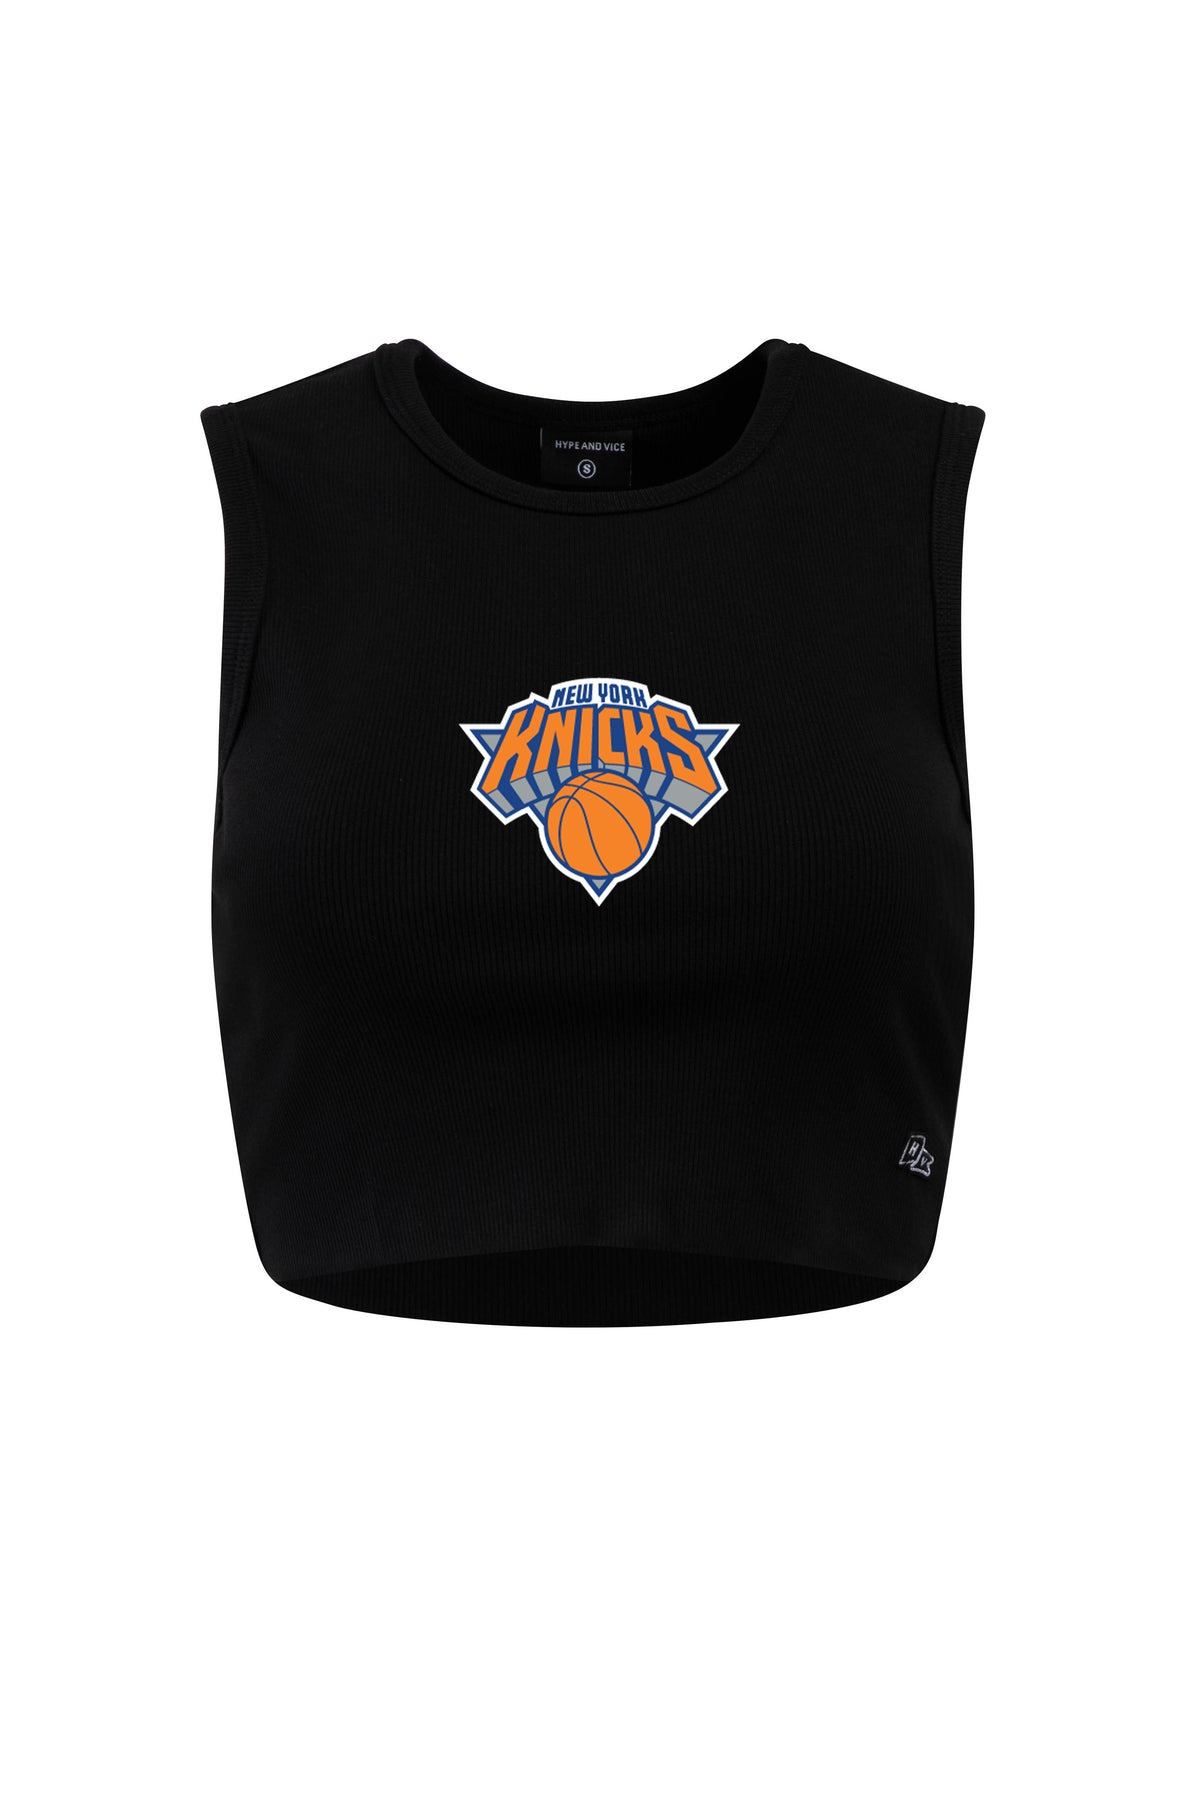 New York Knicks Cut Off Tank